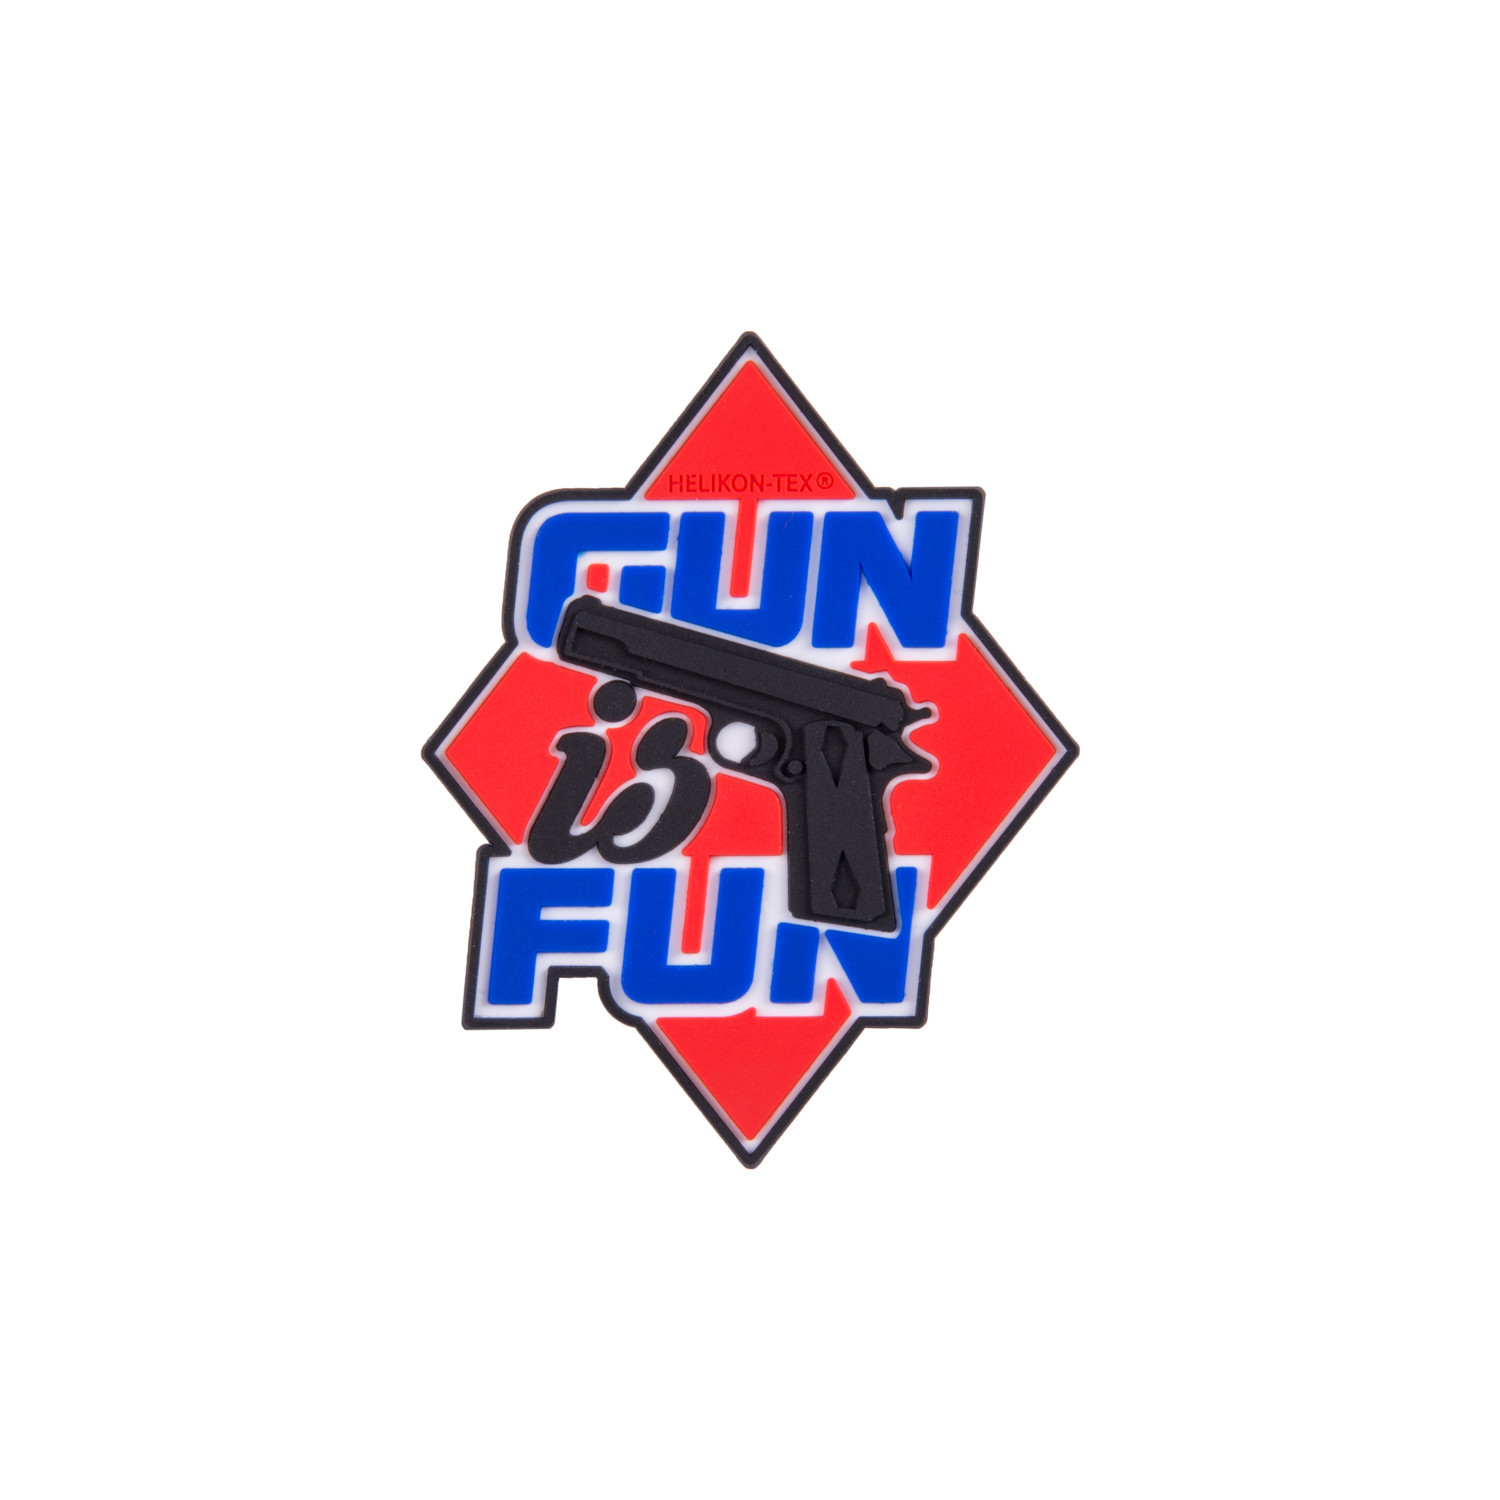 Gun is Fun Patch – Helikon-Tex